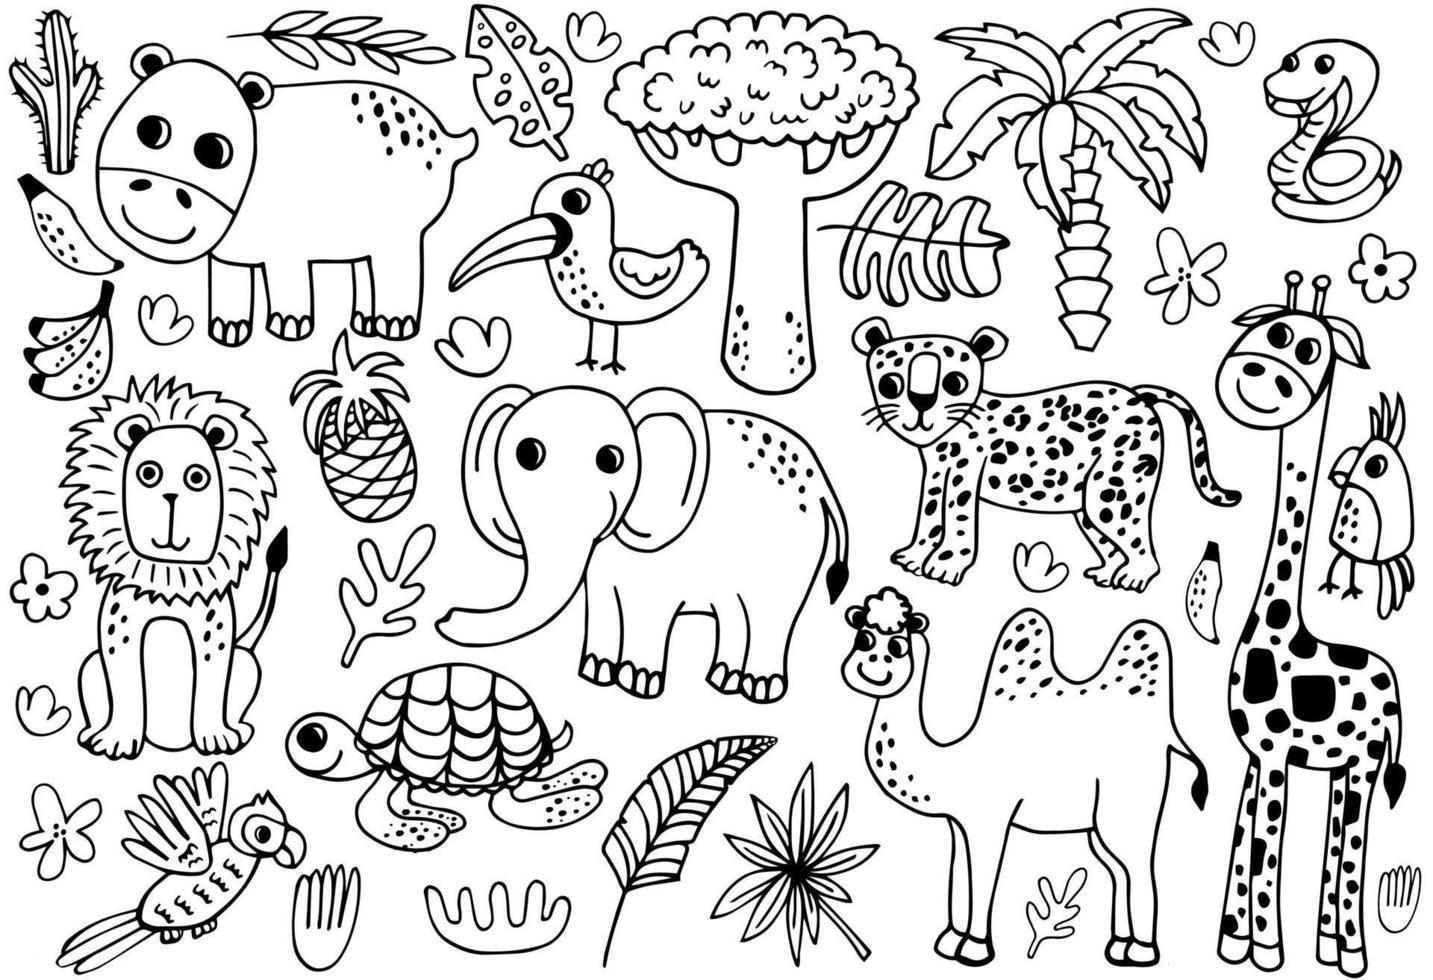 översikt vild safari djur vektor illustration för färg. djungel djur linje konst Inklusive sköldpadda, tiger, zebra, giraff, lejon, elefant, orm.